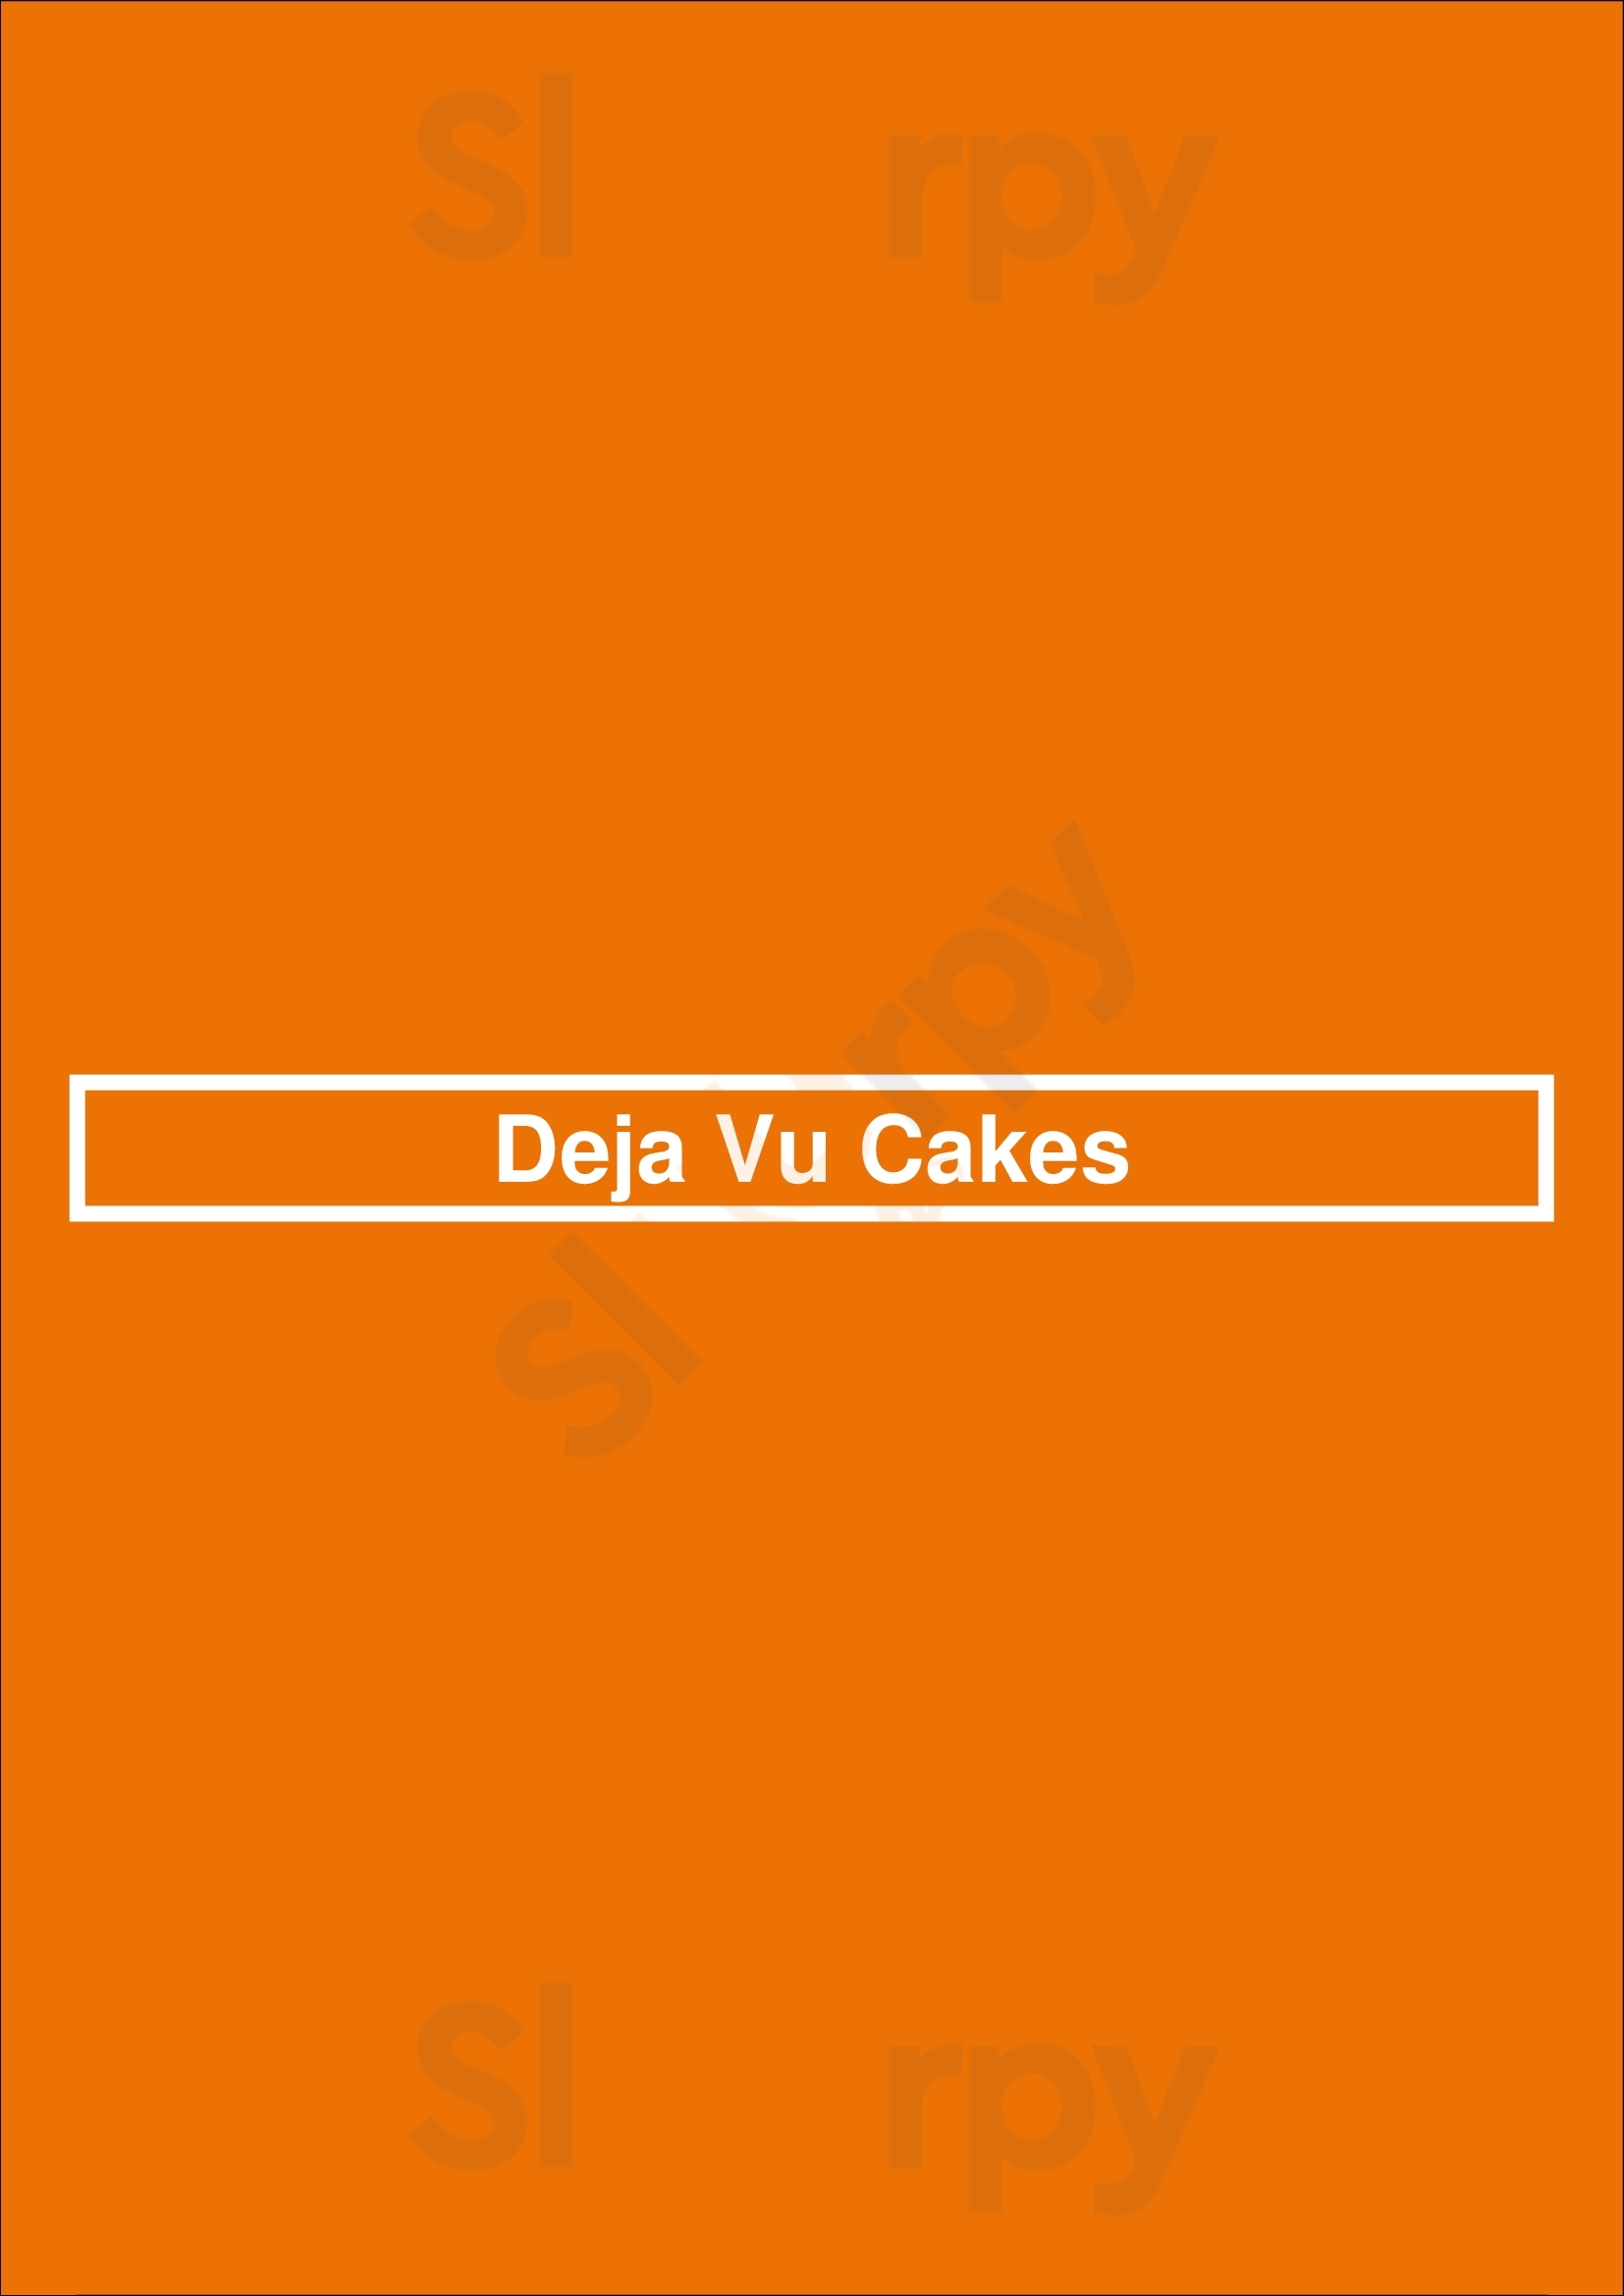 Deja Vu Cupcakes Los Angeles Menu - 1